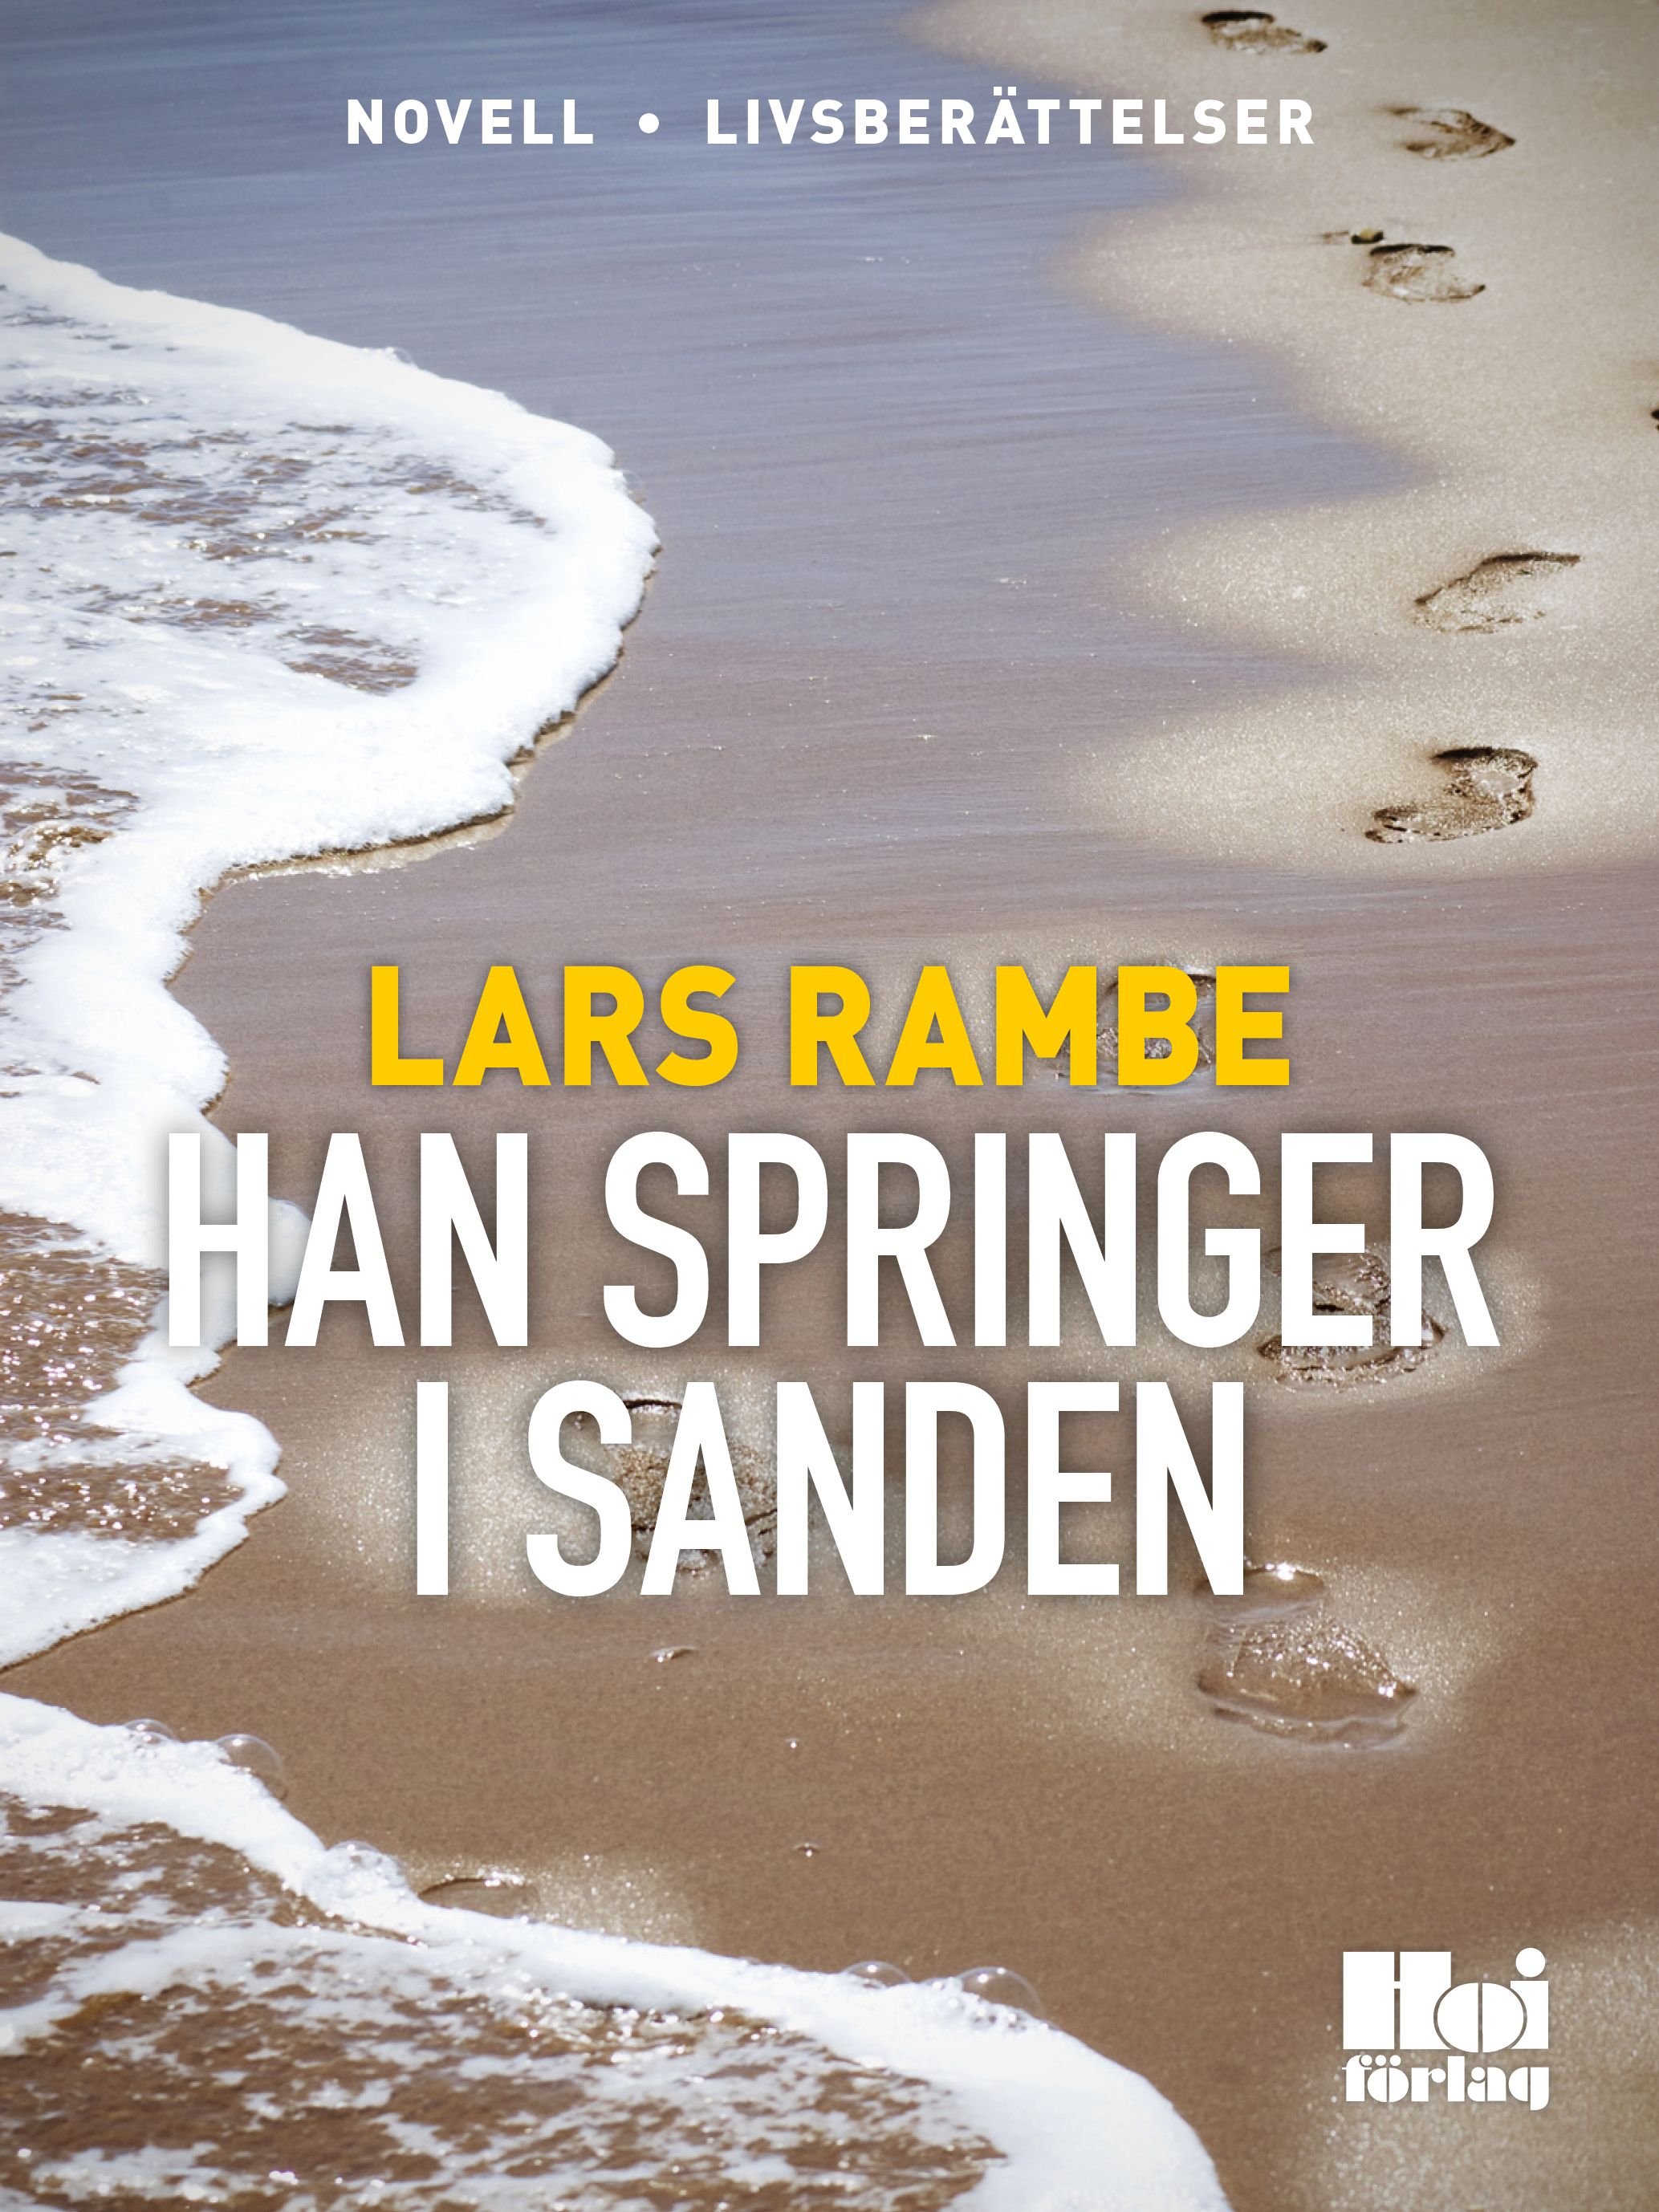 Han springer i sanden, e-bog af Lars Rambe